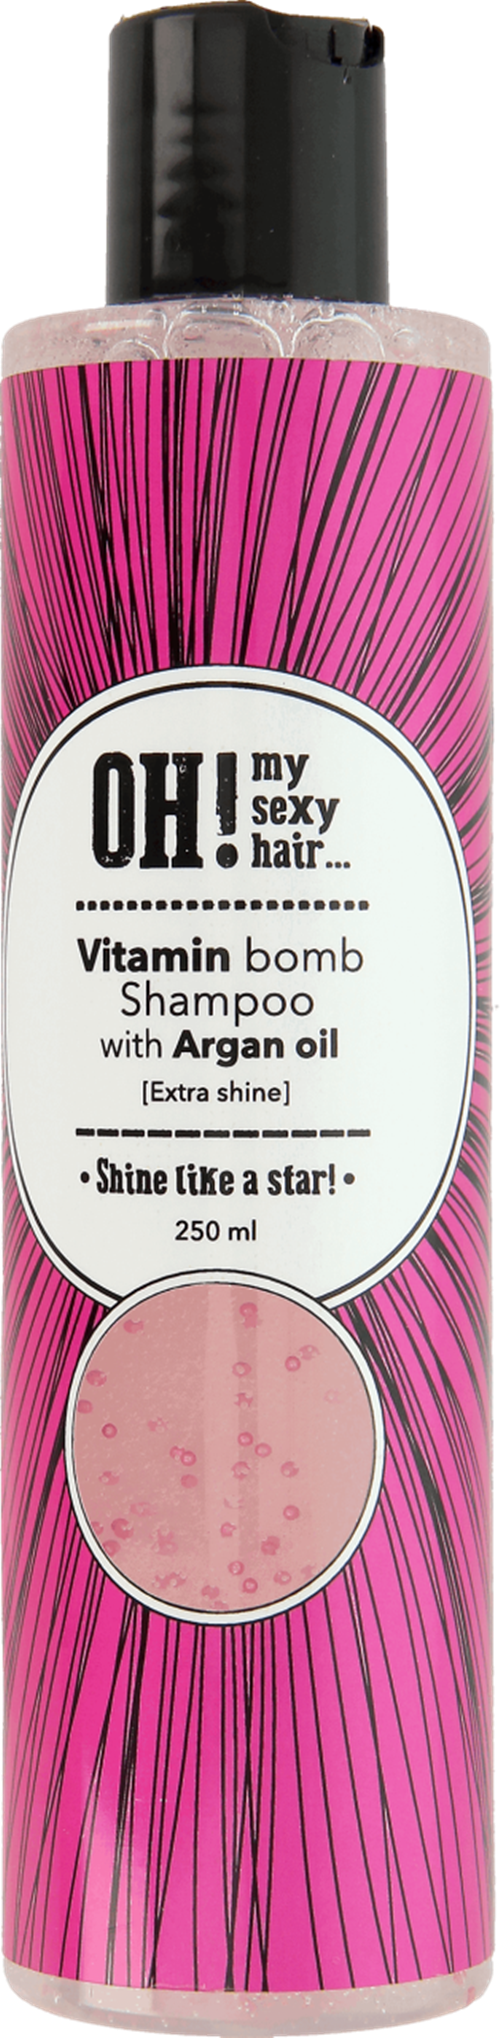 szampon oh my sexy hair rozowy opinie